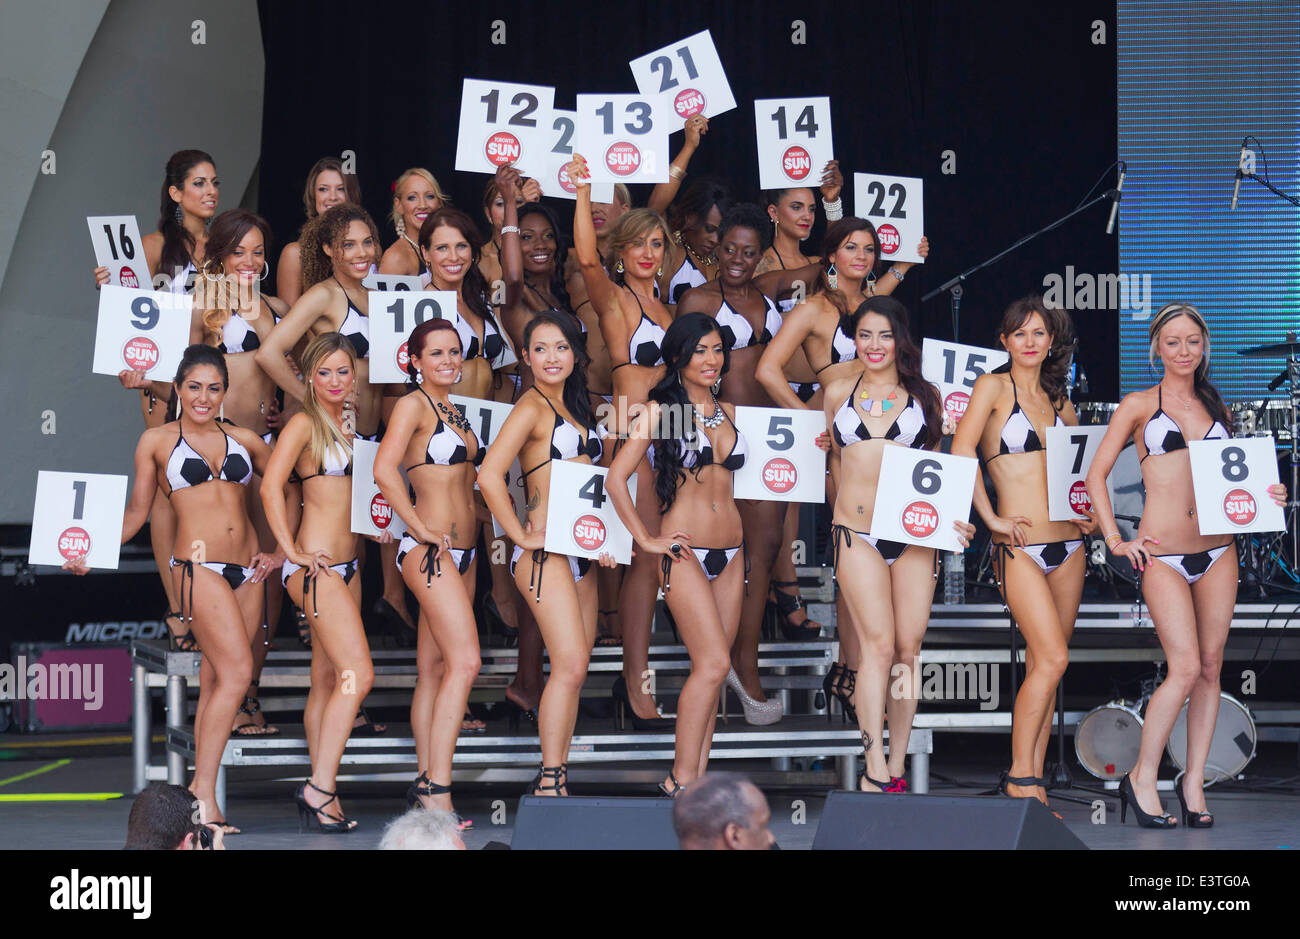 Toronto, Canada. 28 Juin, 2014. Les participants posent sur scène lors de  la Toronto 2014 Miss Bikini et M. Chin Chin Bikini Contest à Toronto,  Canada, le 28 juin 2014. 28-year-old Jennifer